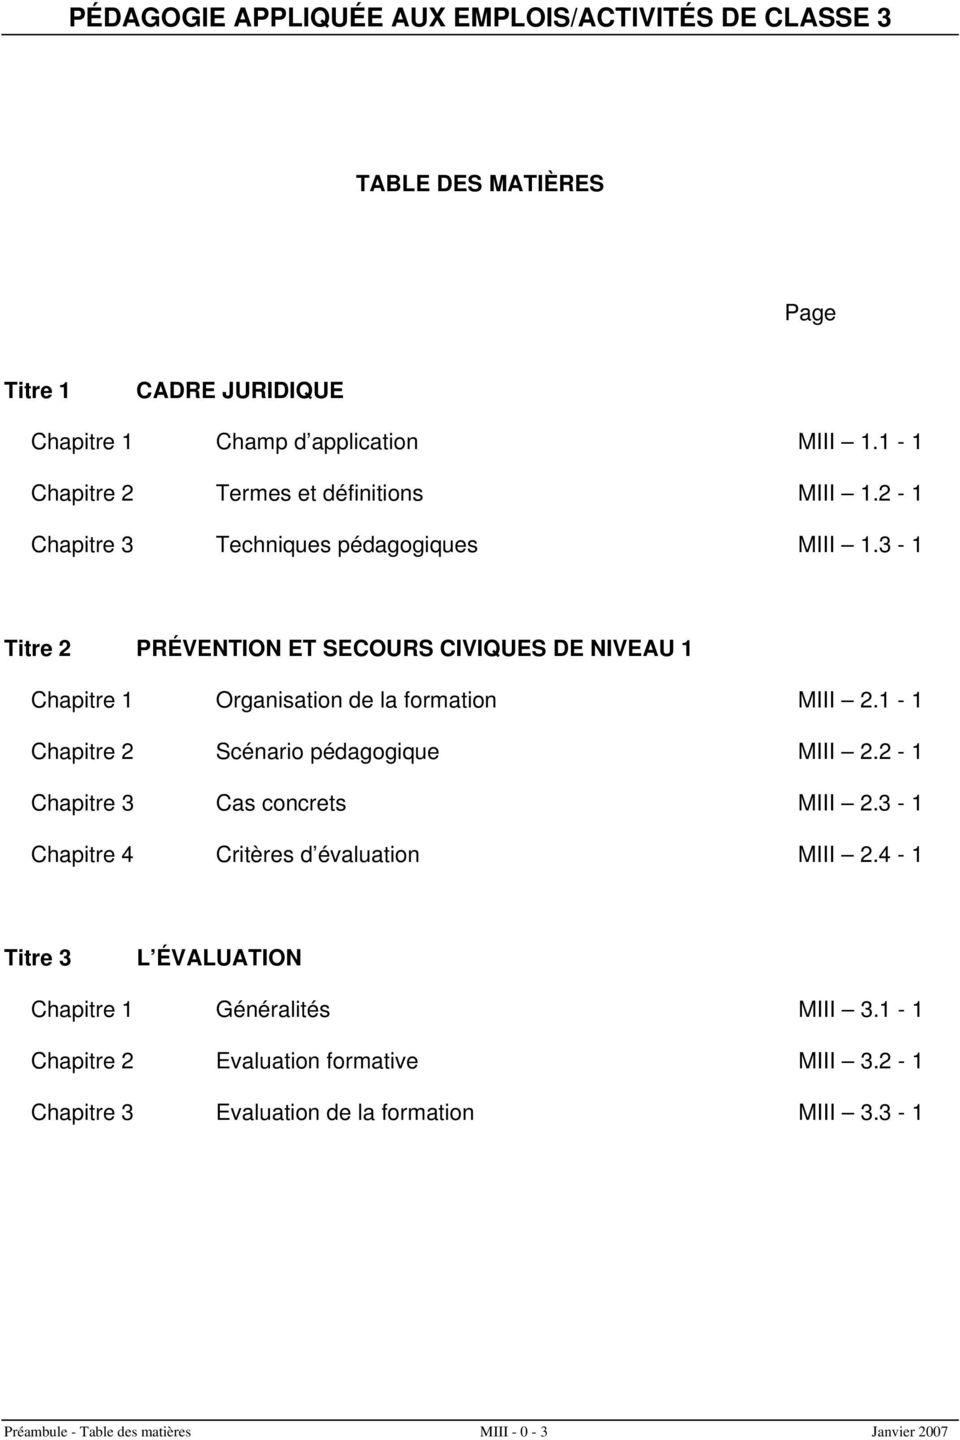 1-1 Chapitre 2 Scénario pédagogique MIII 2.2-1 Chapitre 3 Cas concrets MIII 2.3-1 Chapitre 4 Critères d évaluation MIII 2.